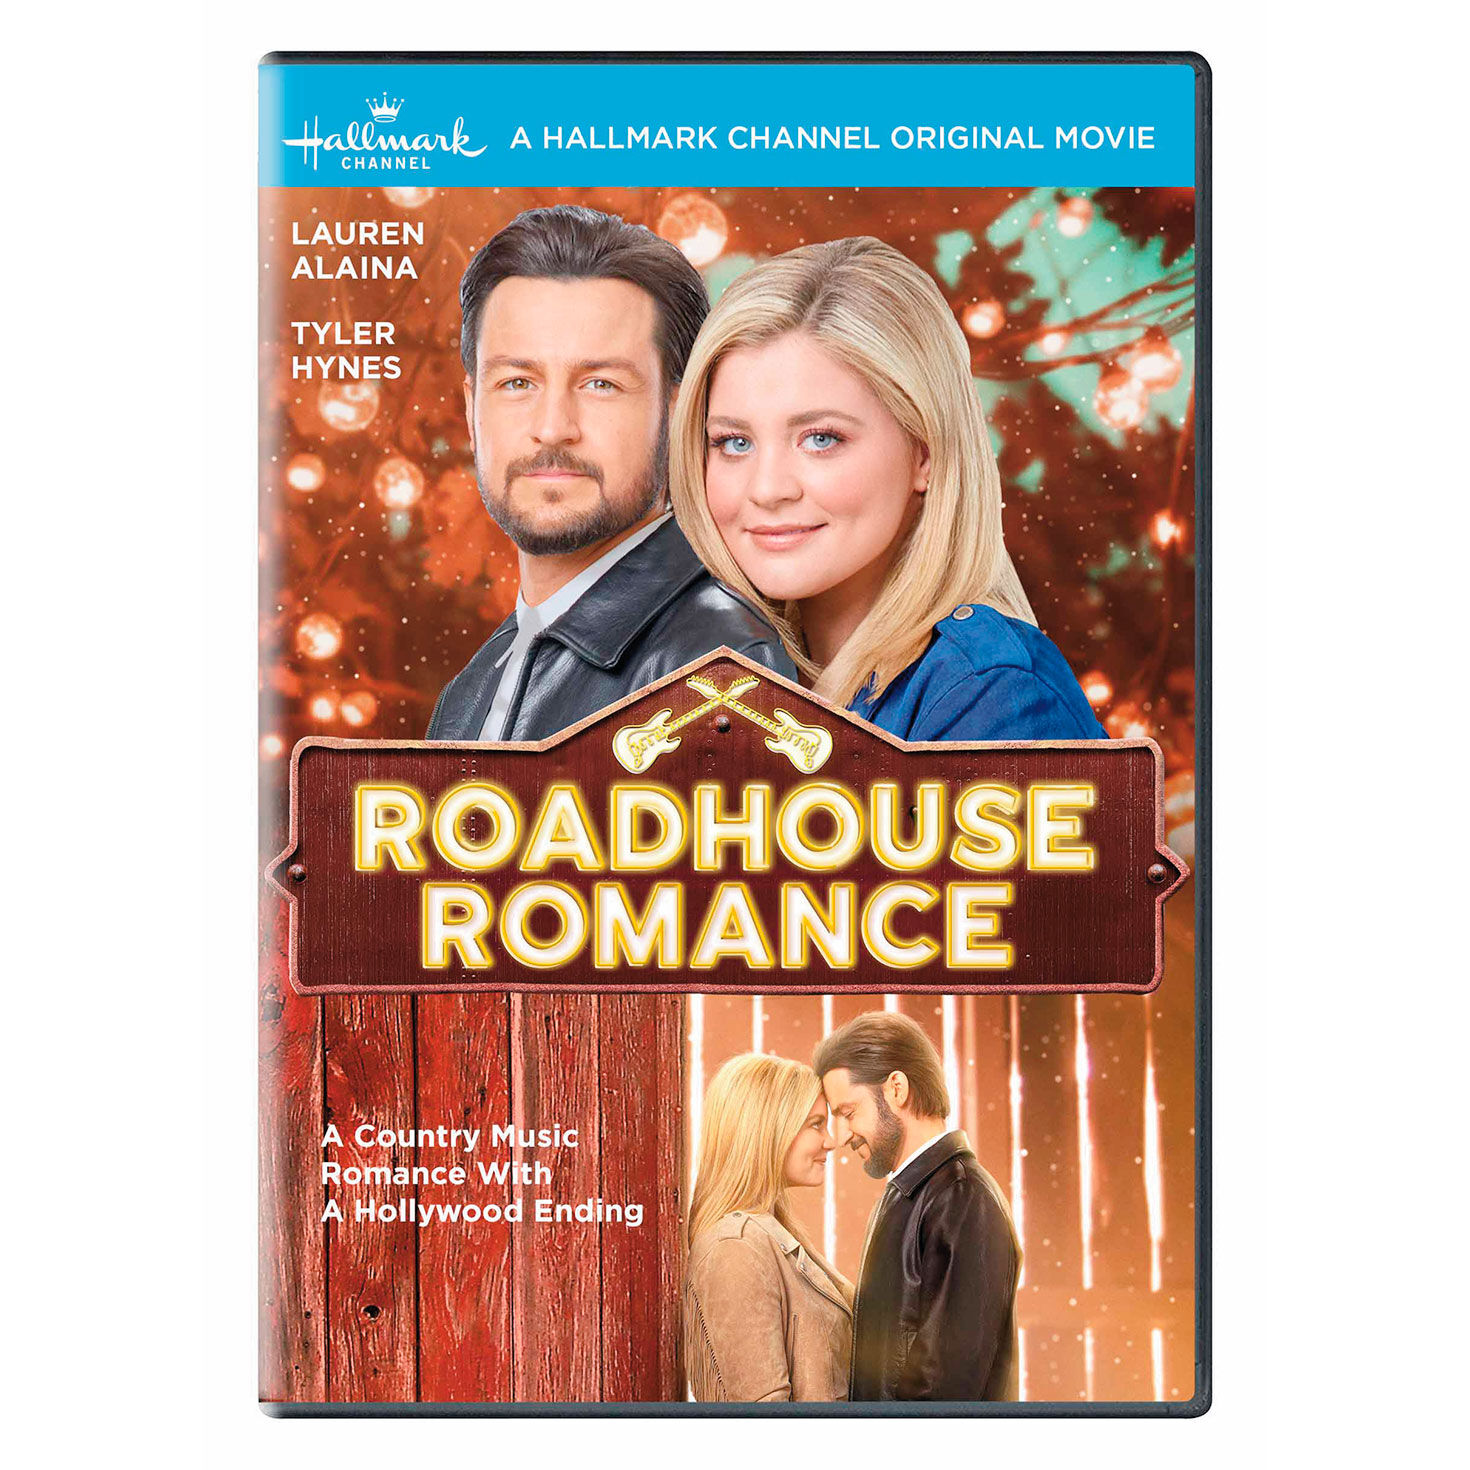 Roadhouse Romance Hallmark Channel DVD Hallmark Channel Hallmark